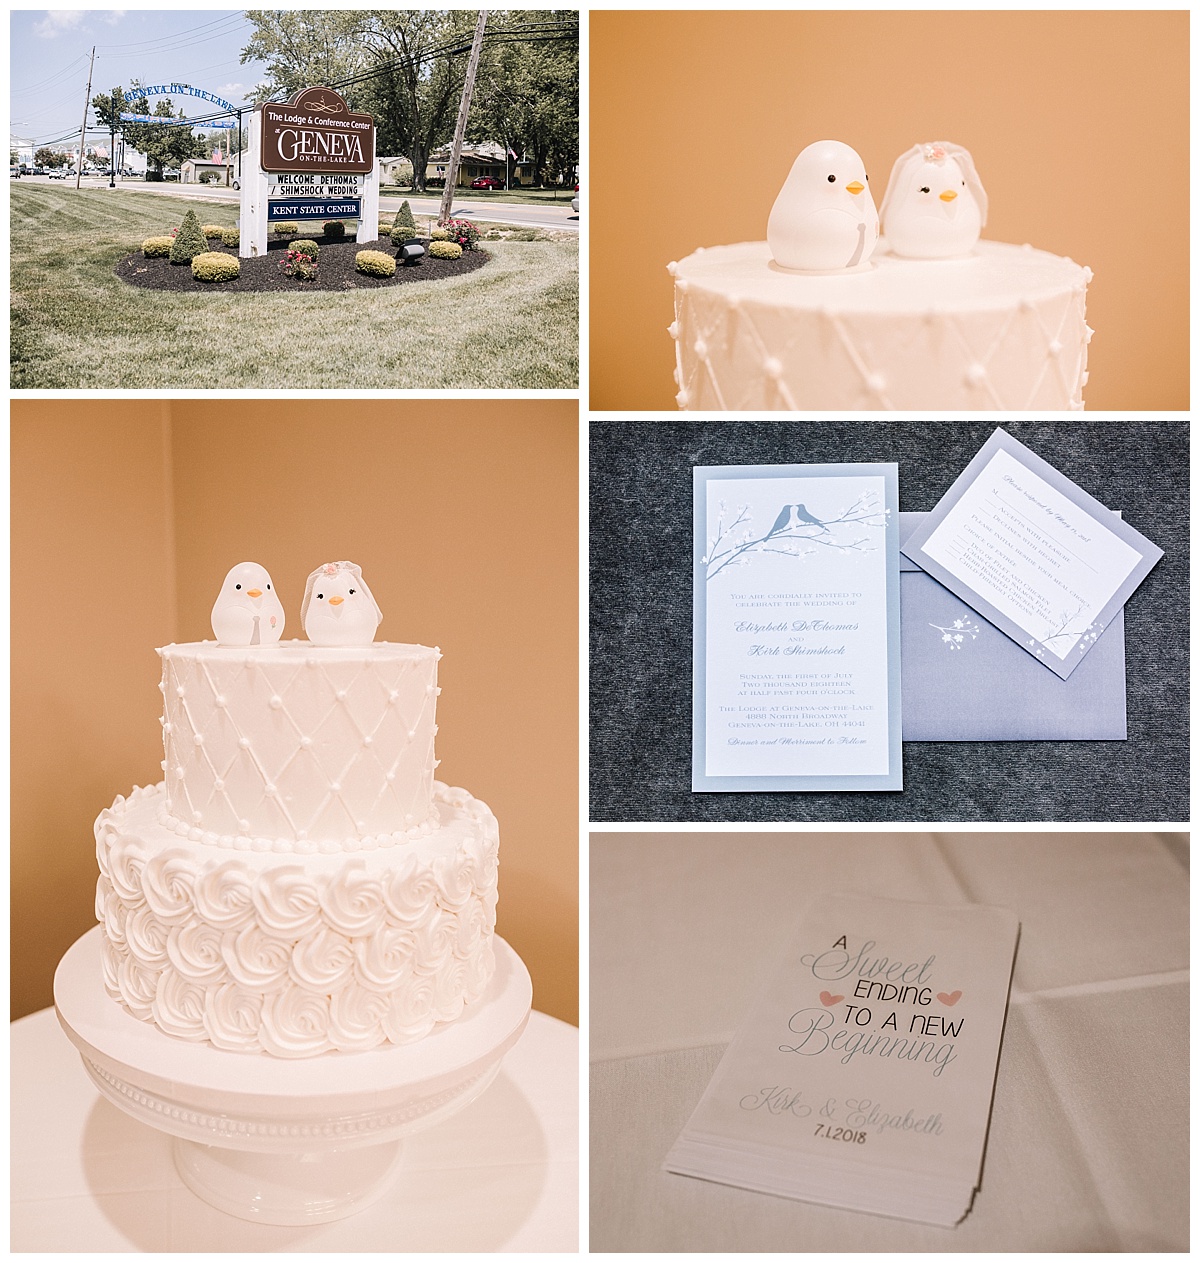 Northeast Ohio Wedding Photographer - Geneva-on-the-Lake Wedding - Liz & Kirk